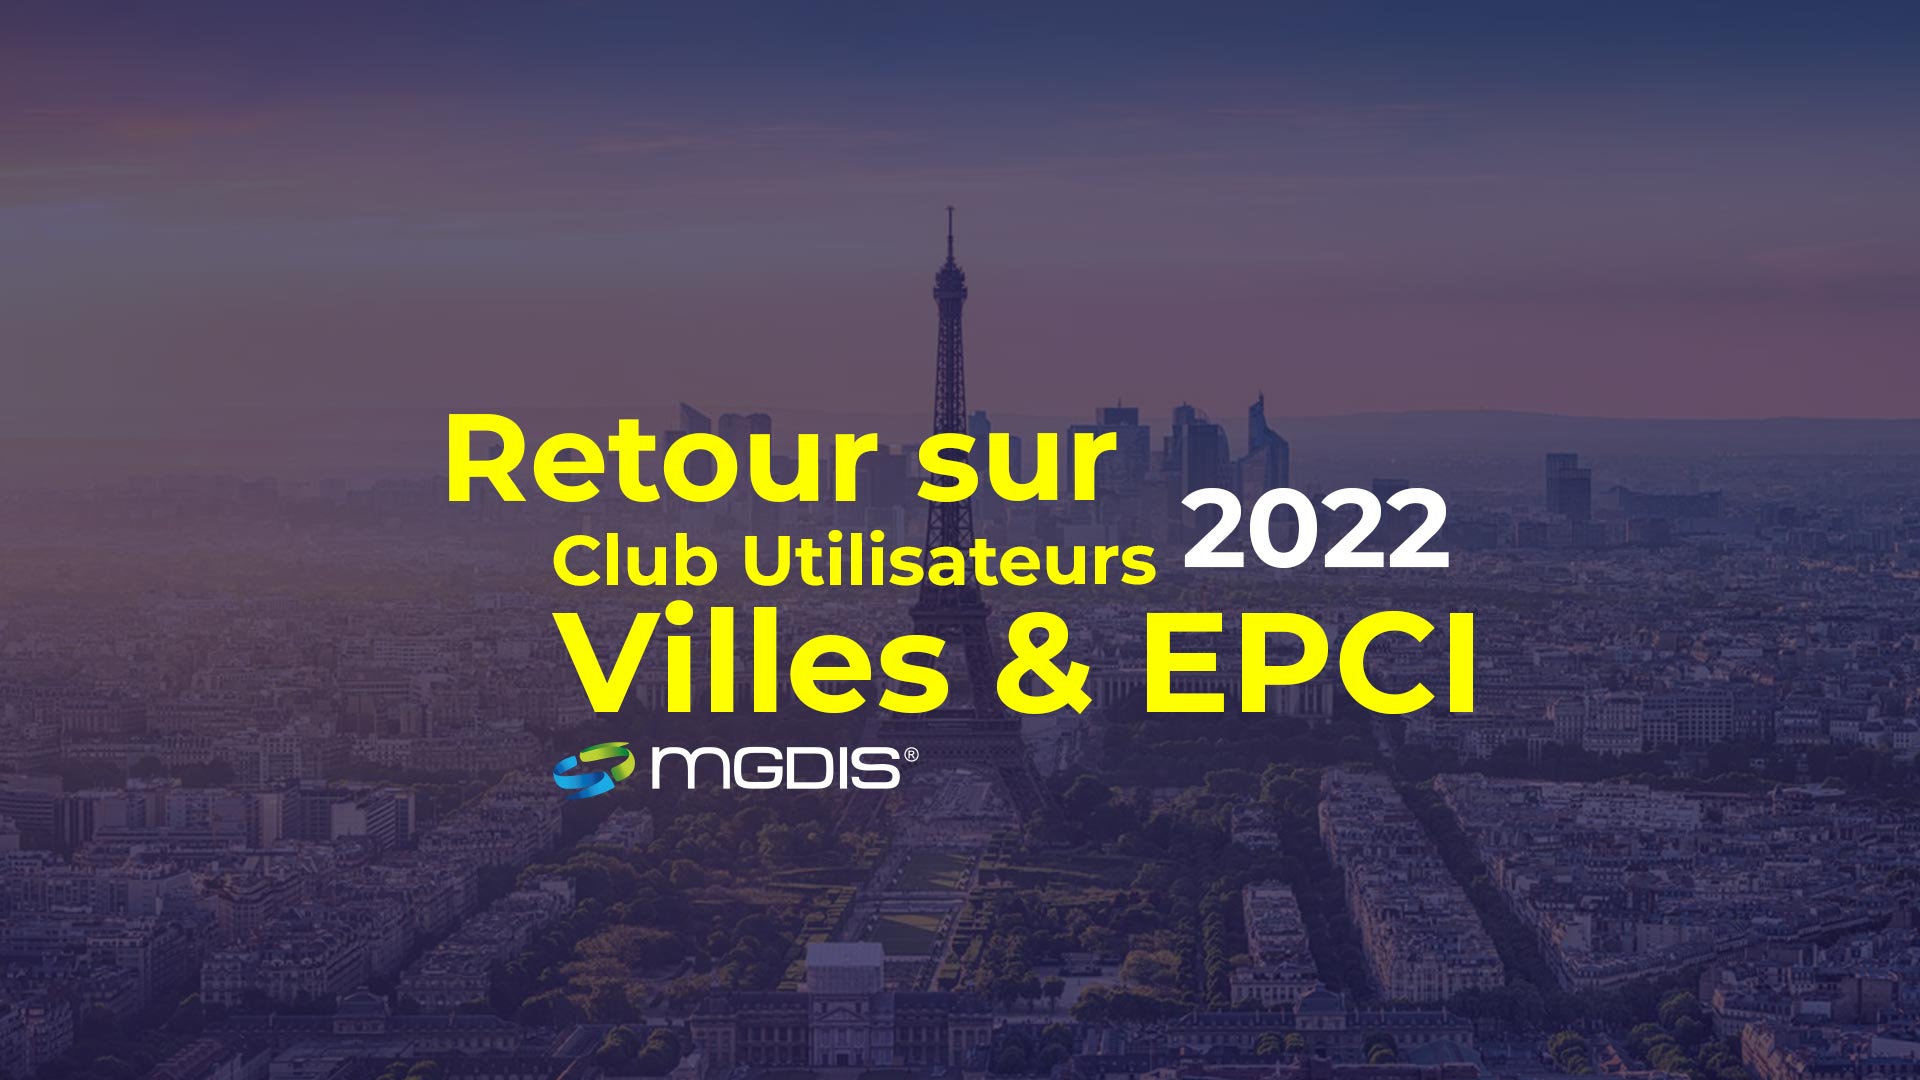 Retour-sur-le-Club-Utilsateurs-Villes-EPCI-2022-MGDIS